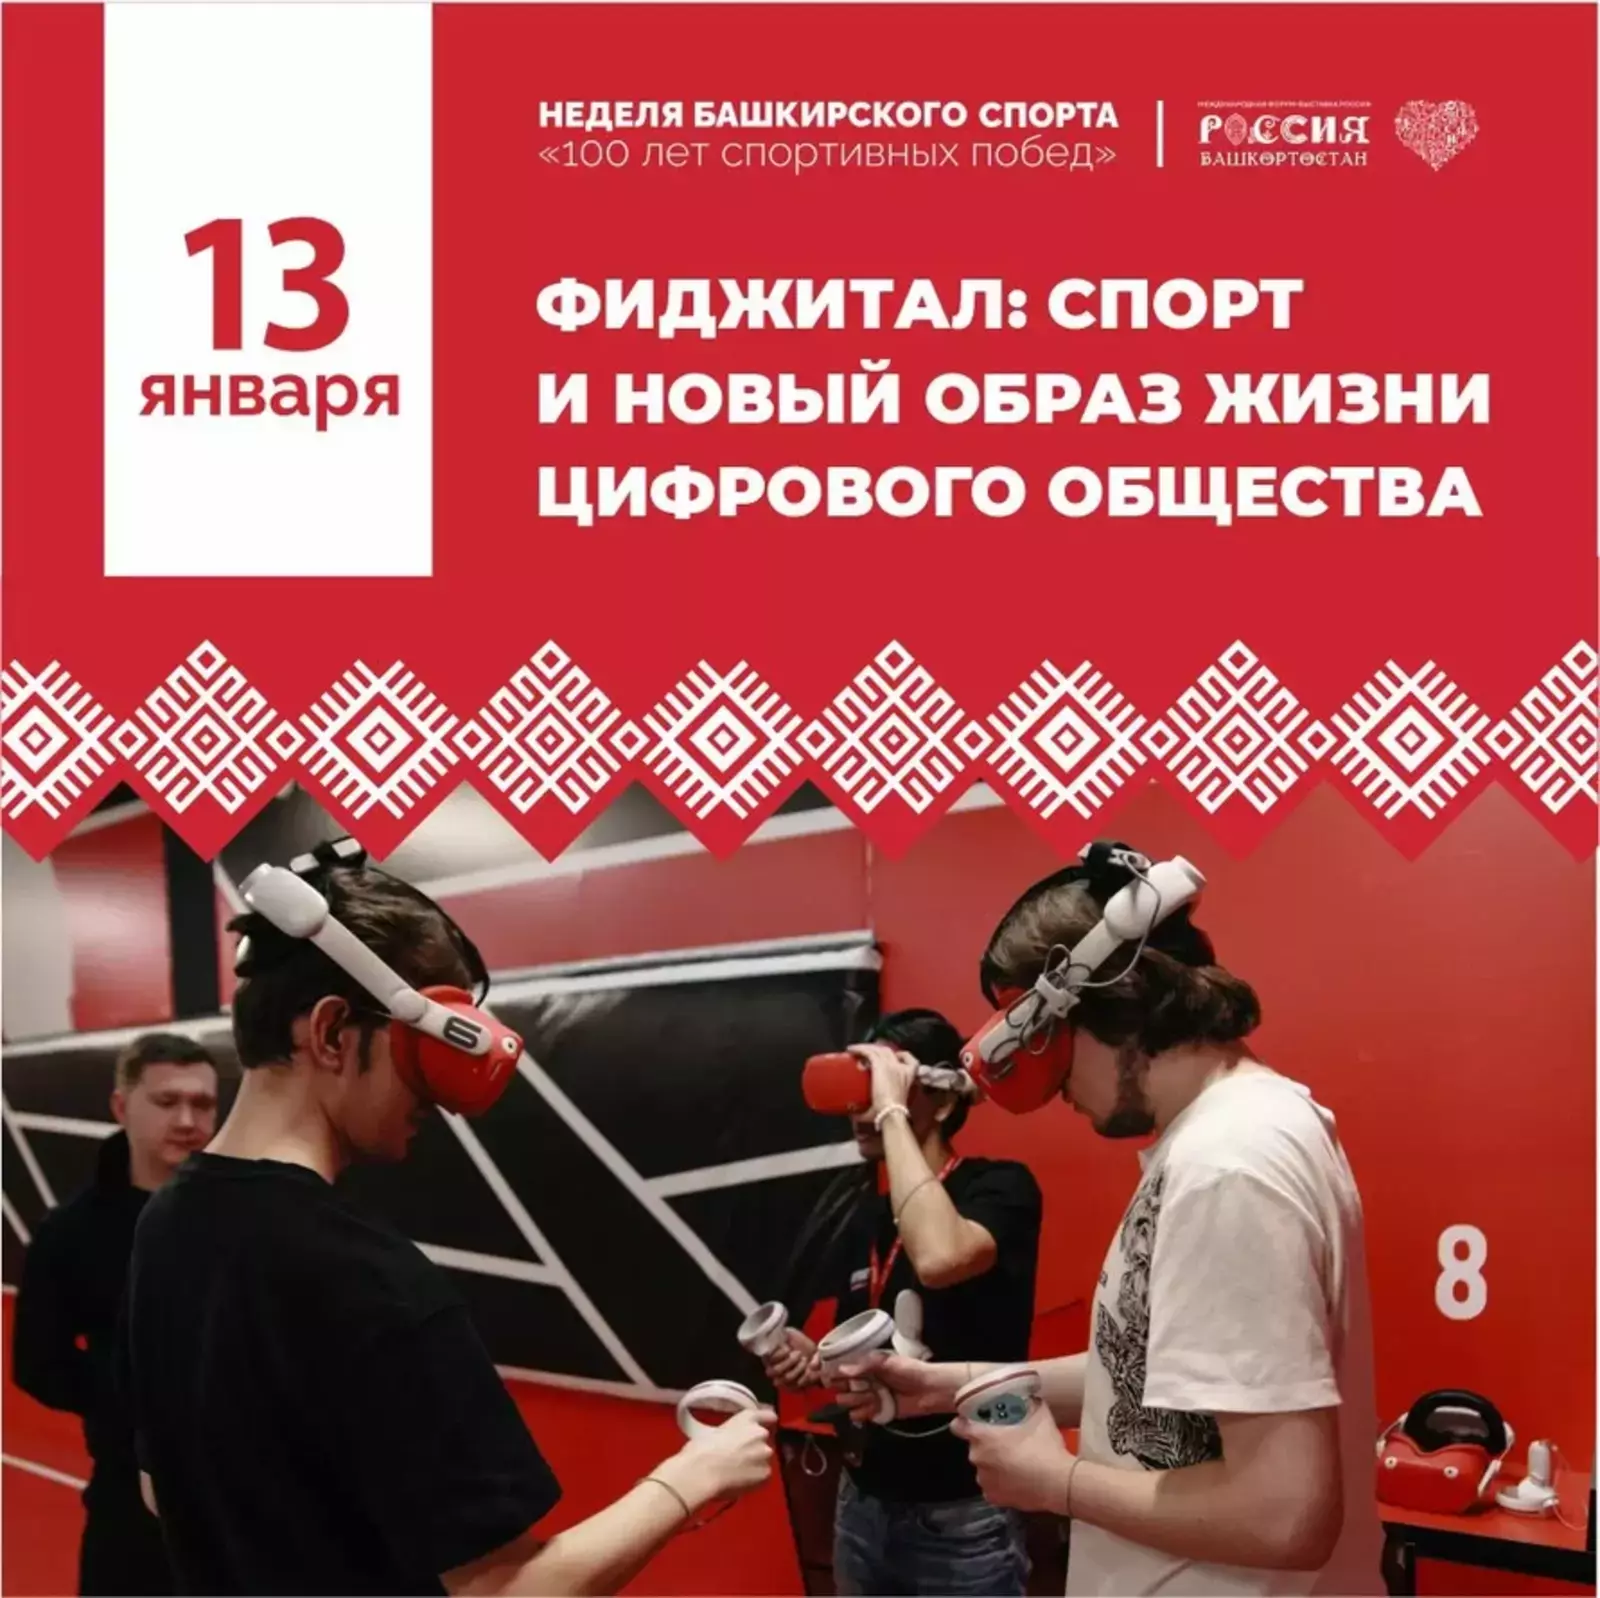 Неделя башкирского спорта стартовала на выставке "Россия"